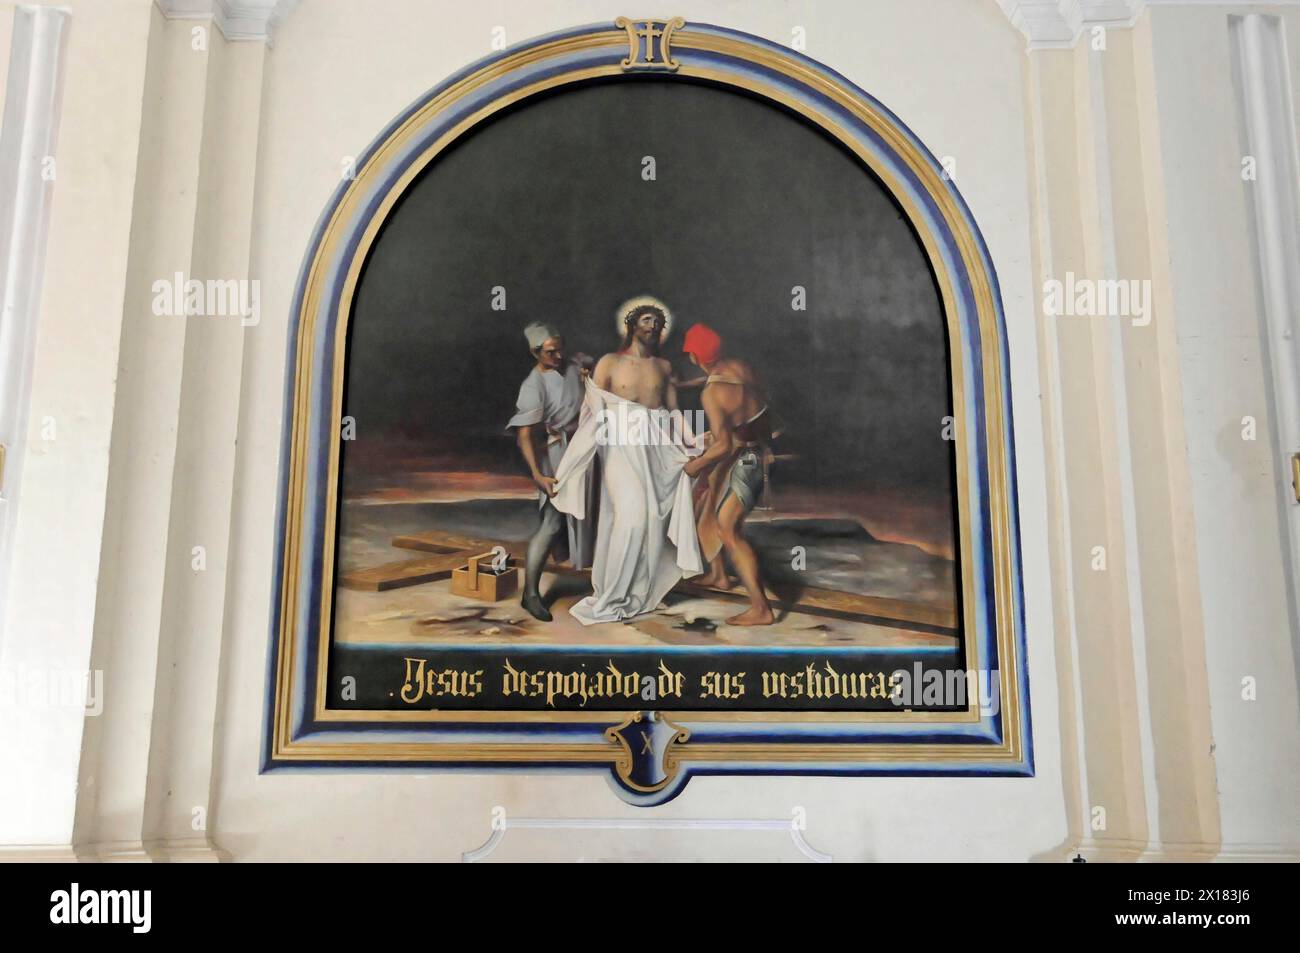 Catedral de la Asuncion, 1860, Léon, Nicaragua, Amérique centrale, peinture représentant Jésus dépouillé de ses vêtements, Amérique centrale Banque D'Images